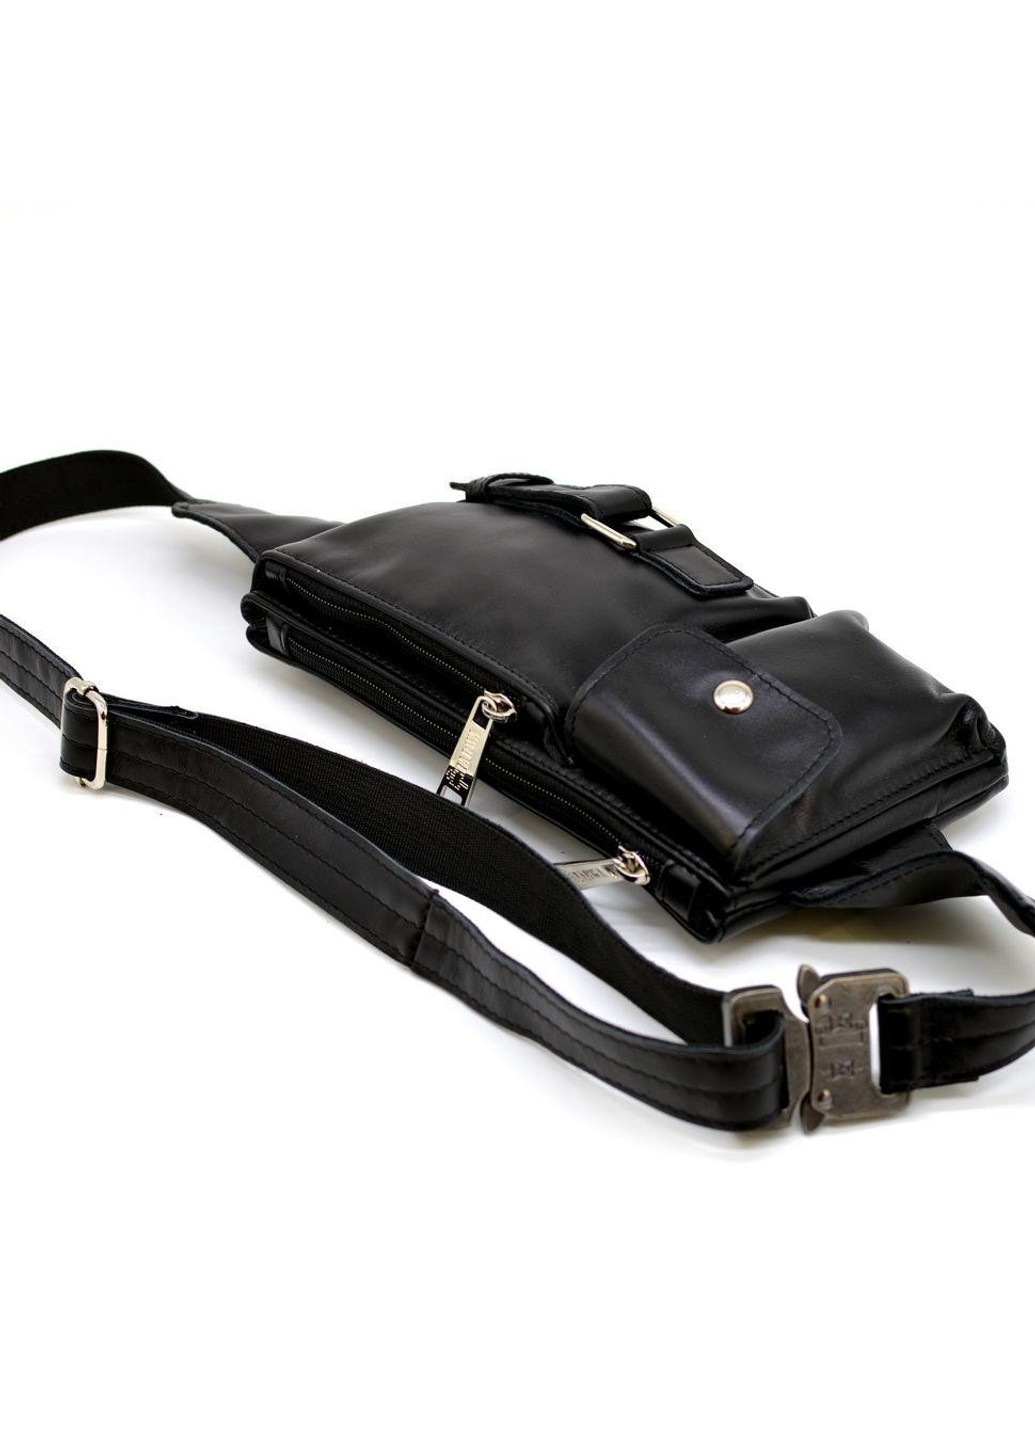 Шкіряна чоловіча чорна сумка на тарва ga-8135-3 ремінь Md TARWA (263776714)